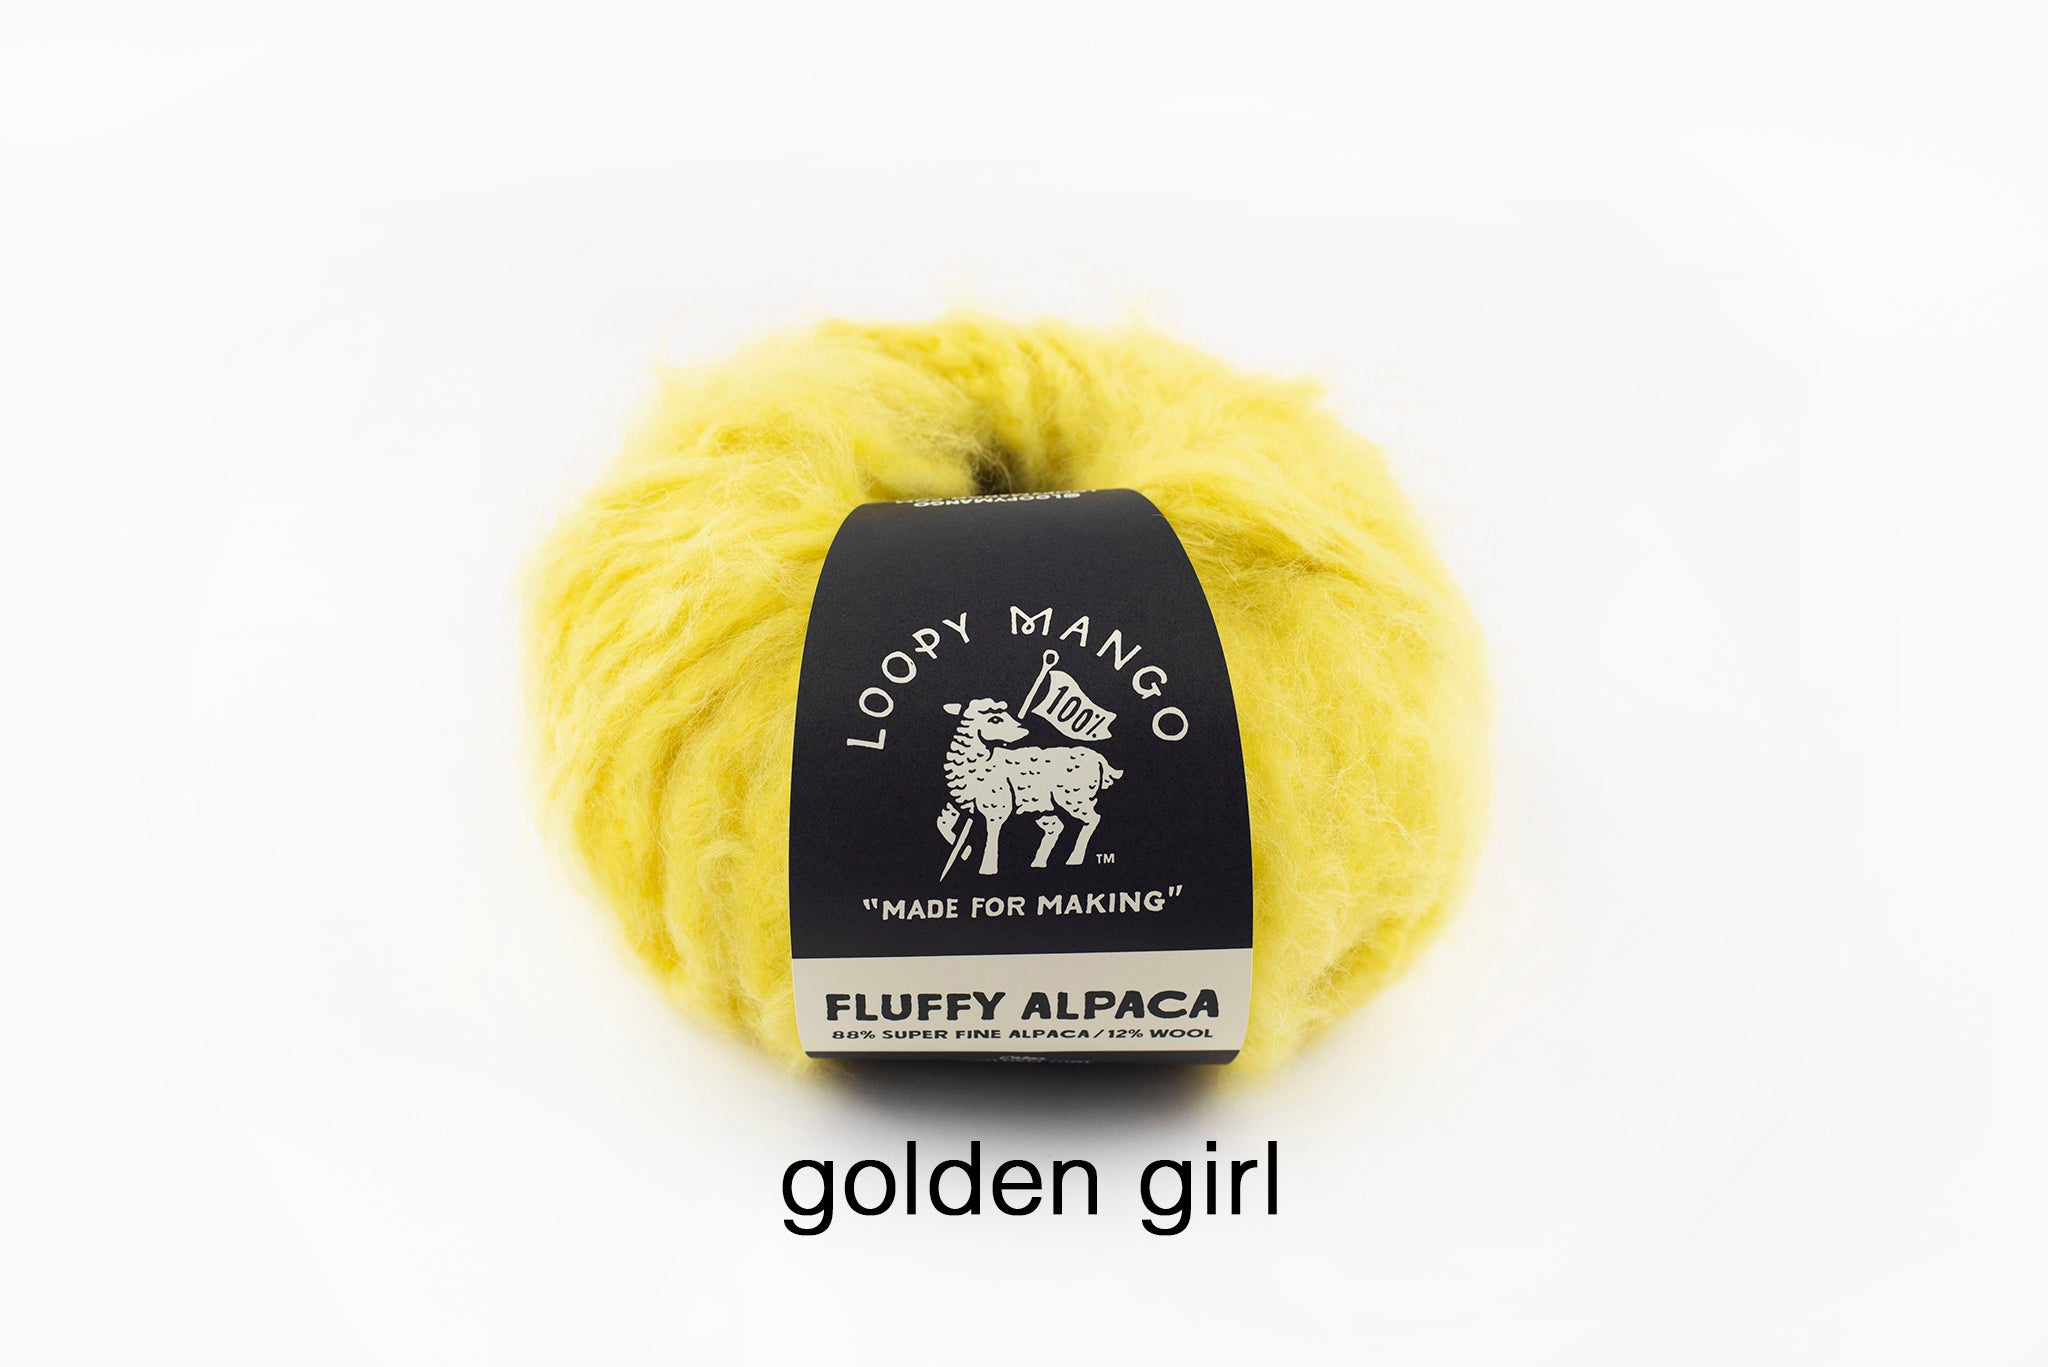 SALE - 30% - 50% OFF ORIGINAL PRICE Fluffy Alpaca